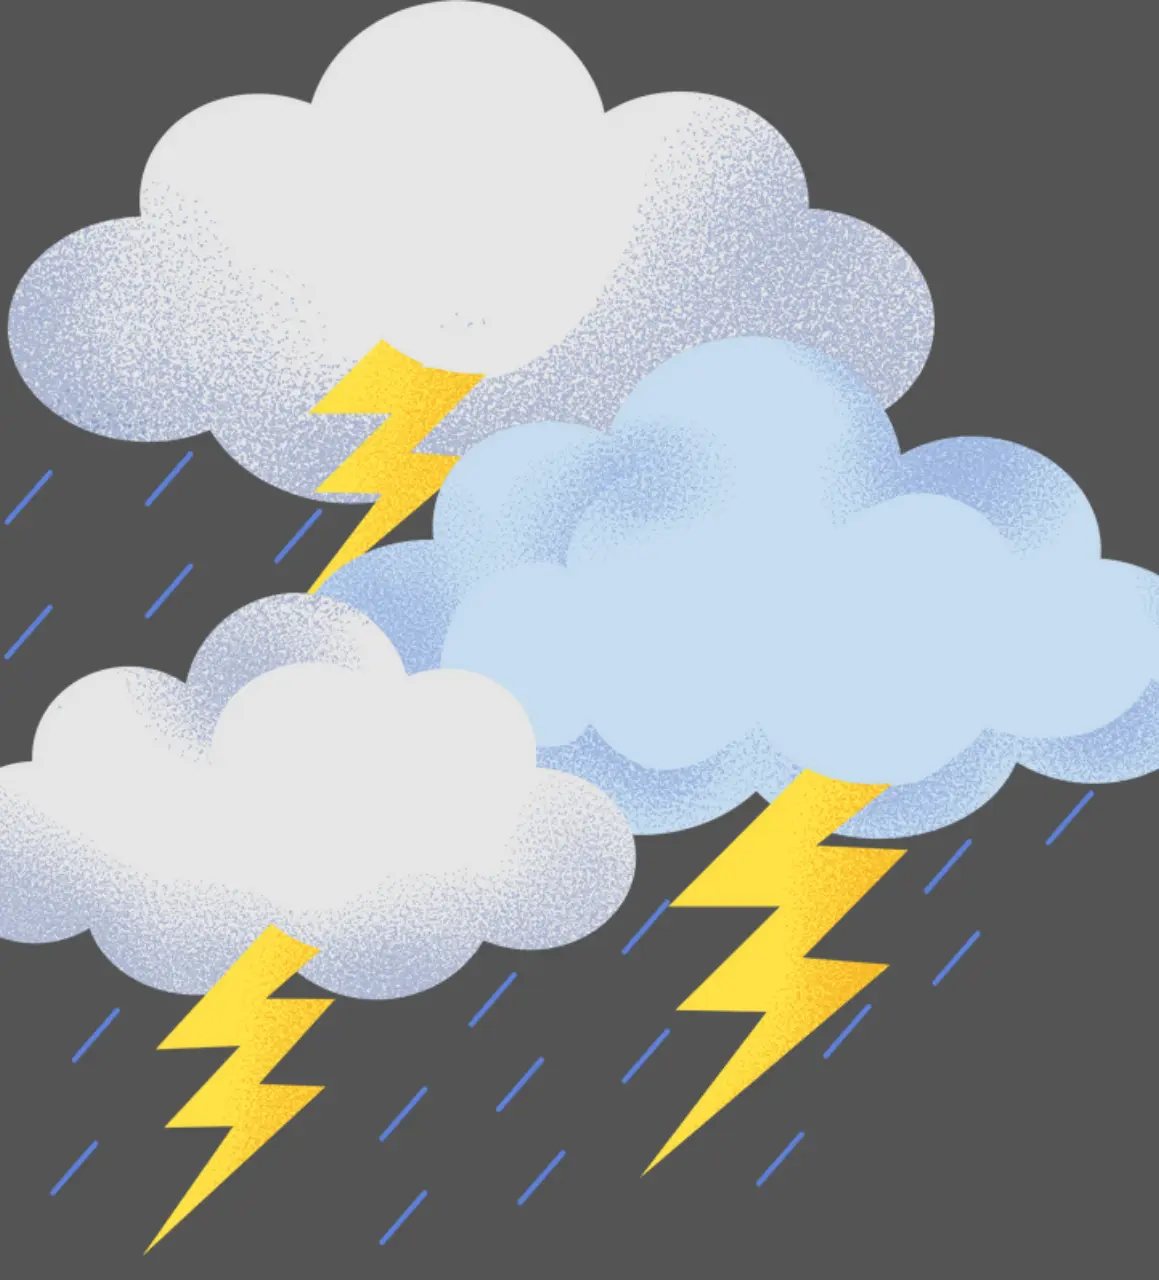 Why do we see lightning before thunder ?